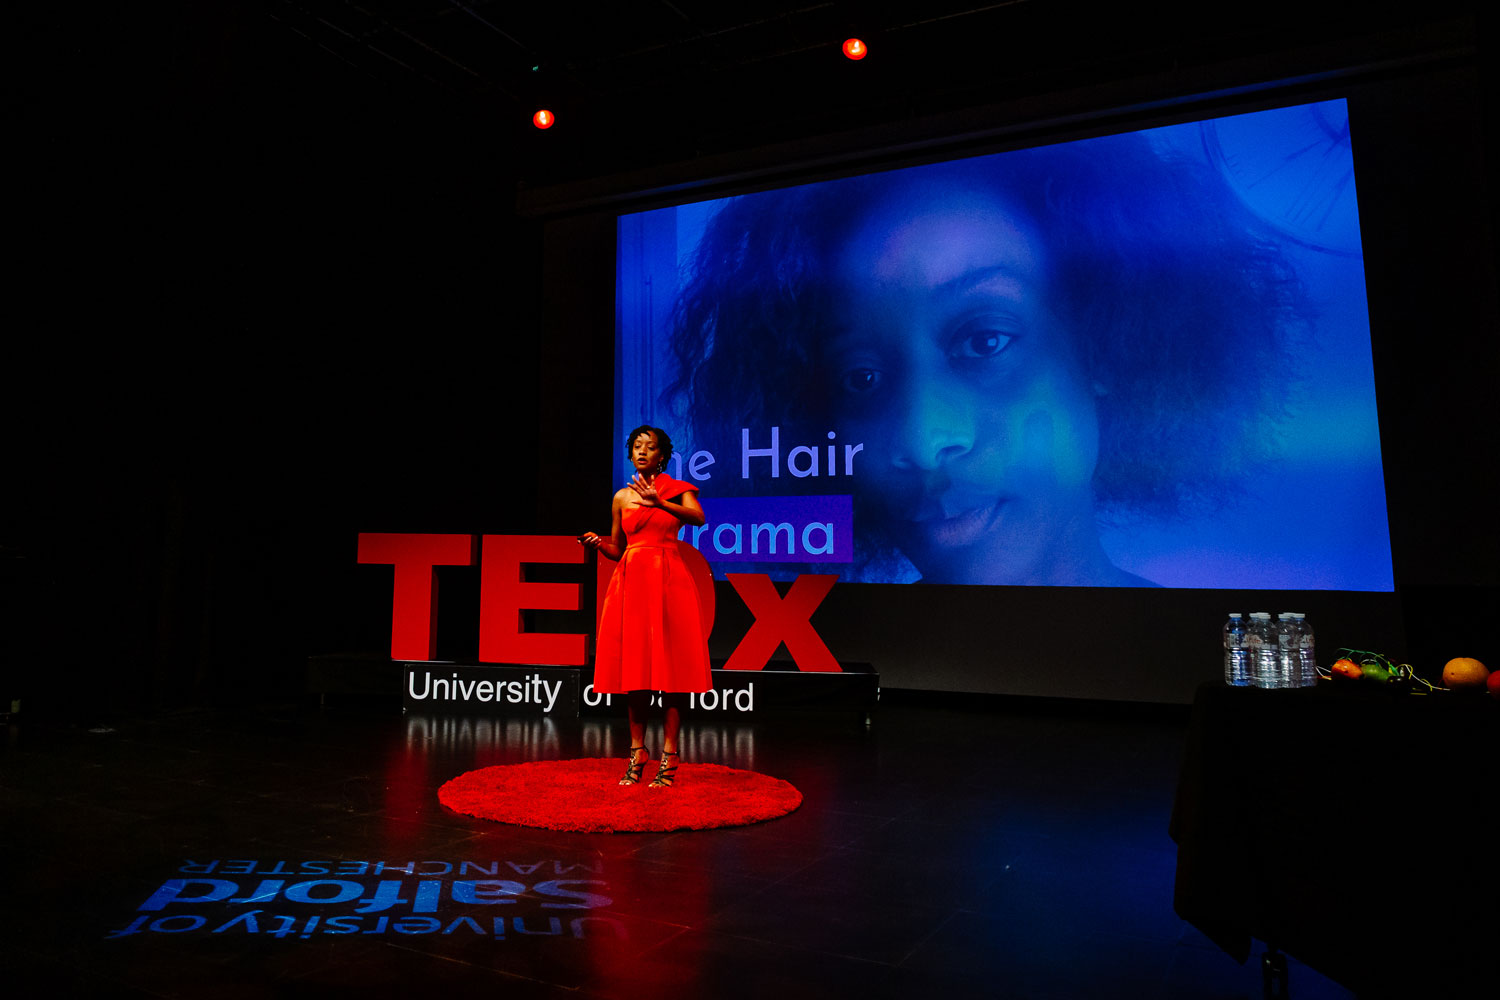 Terence-Meghani-Krazy-Media-TEDX-6495